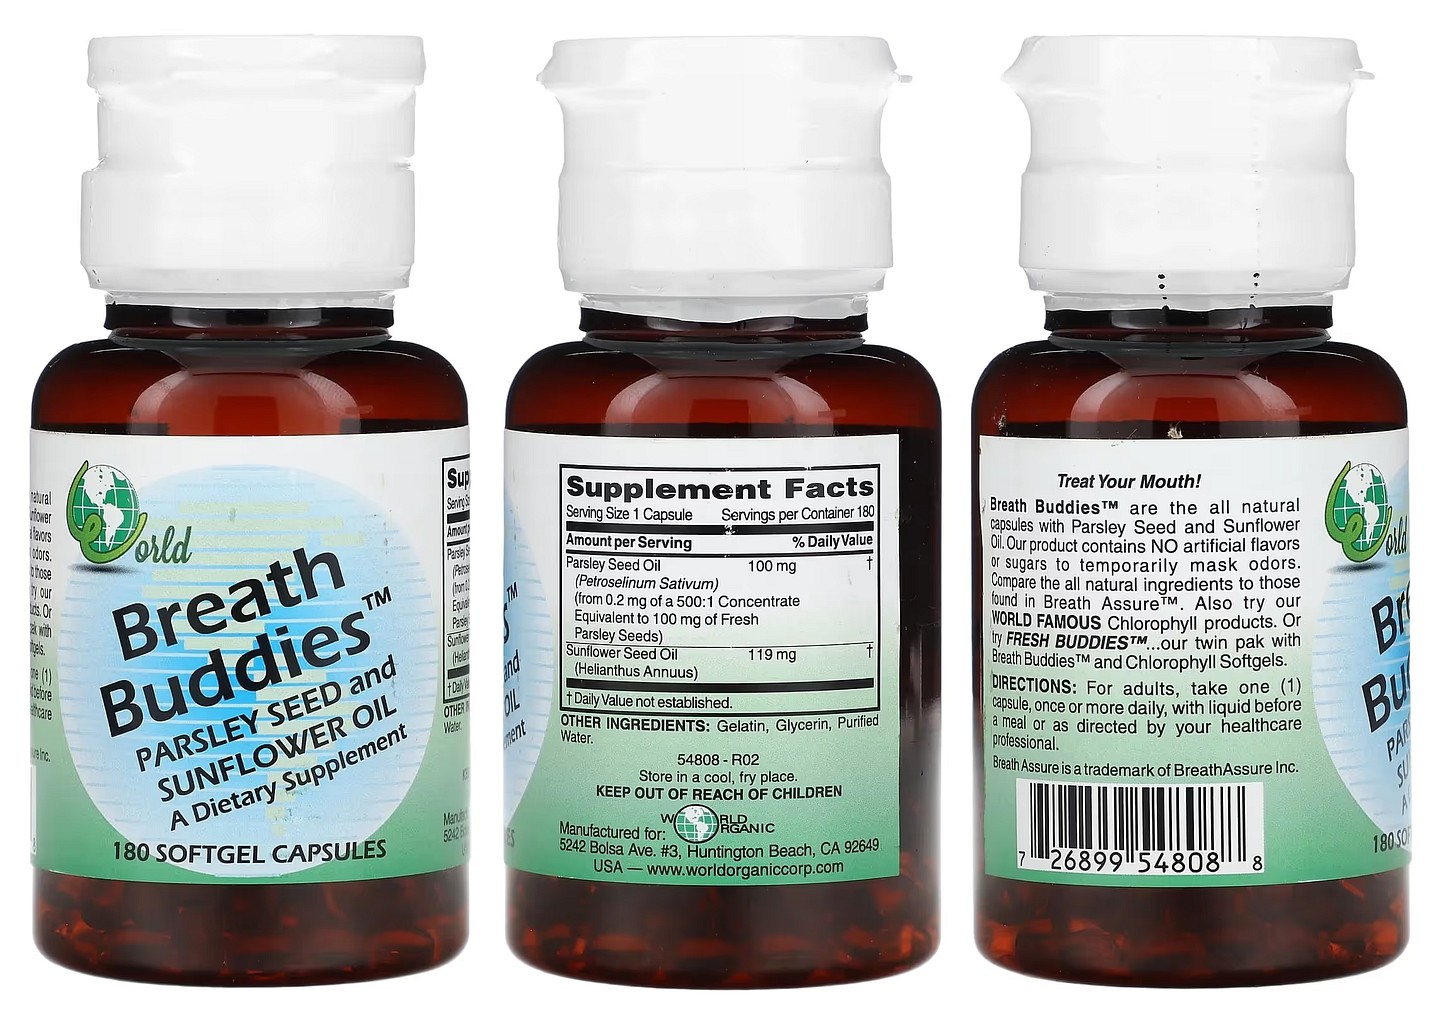 World Organic, Breath Buddies packaging